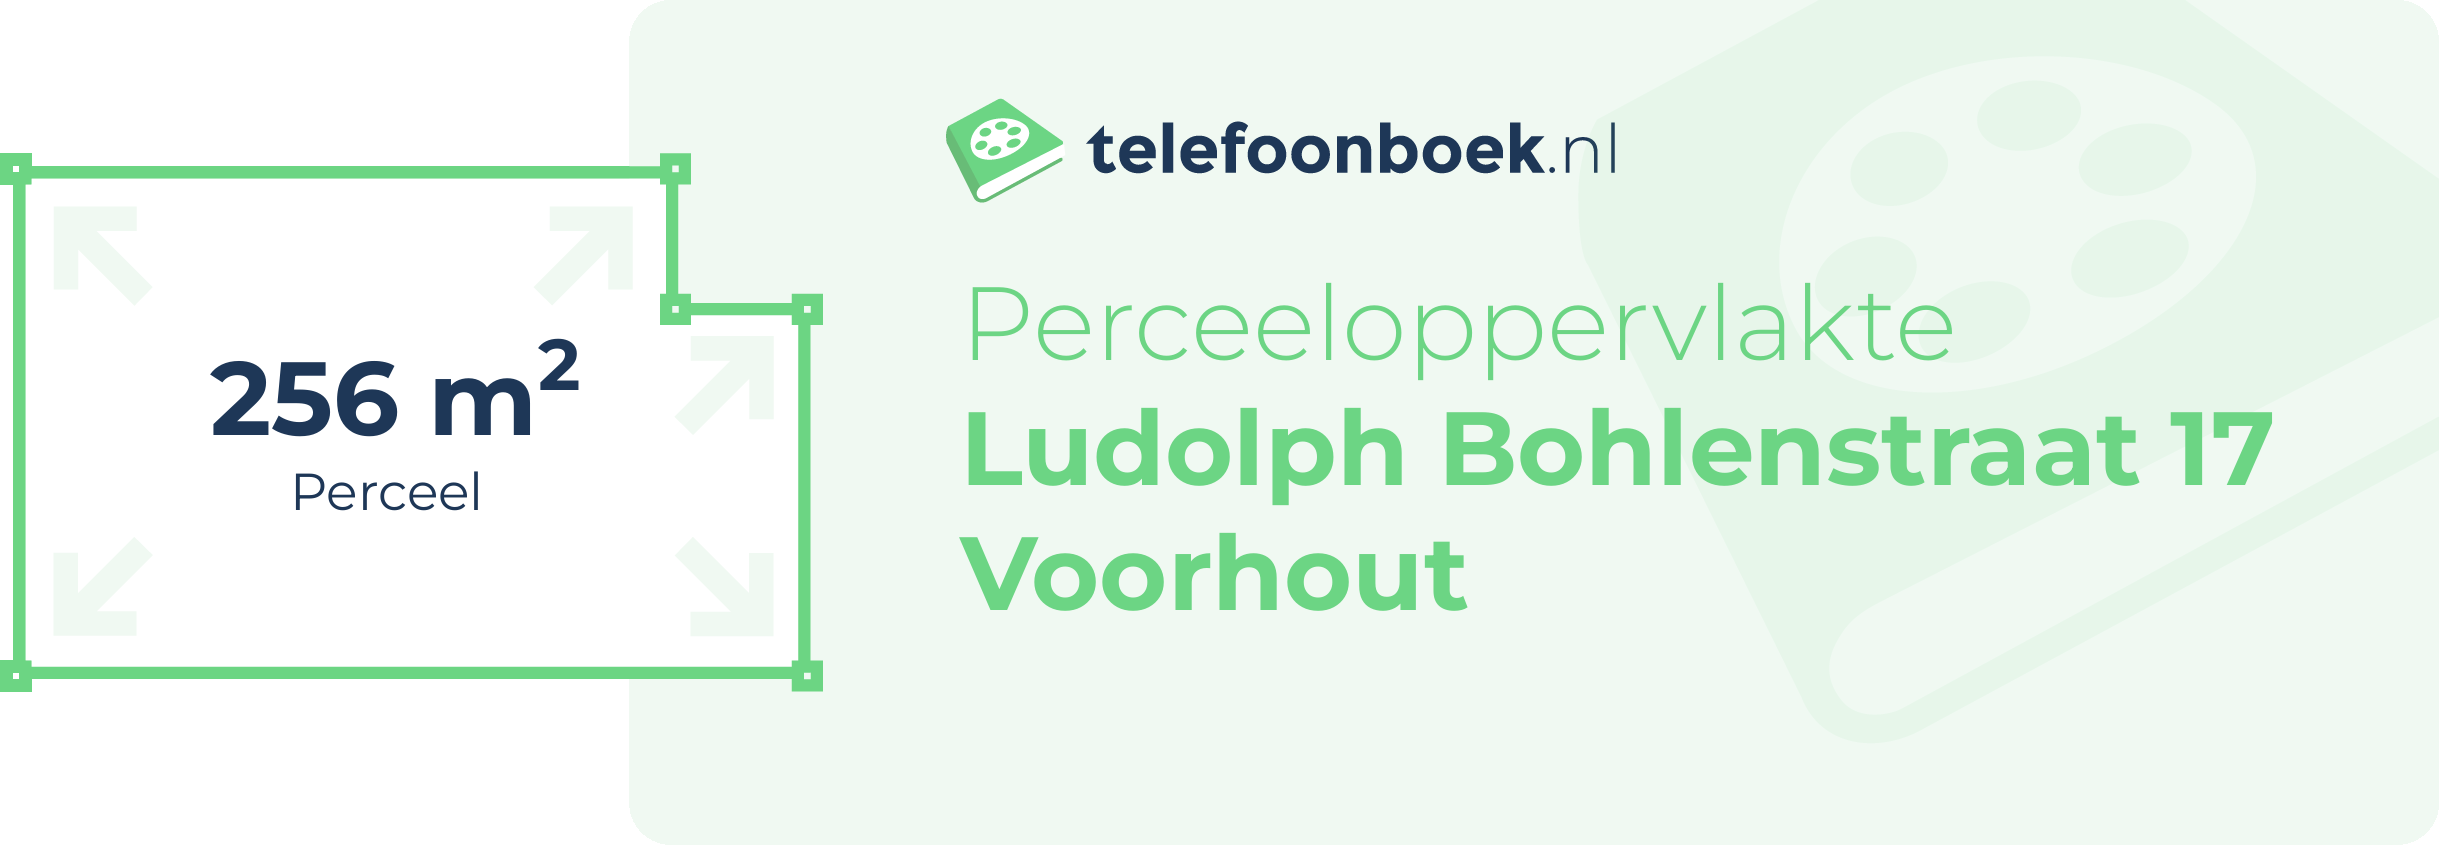 Perceeloppervlakte Ludolph Bohlenstraat 17 Voorhout